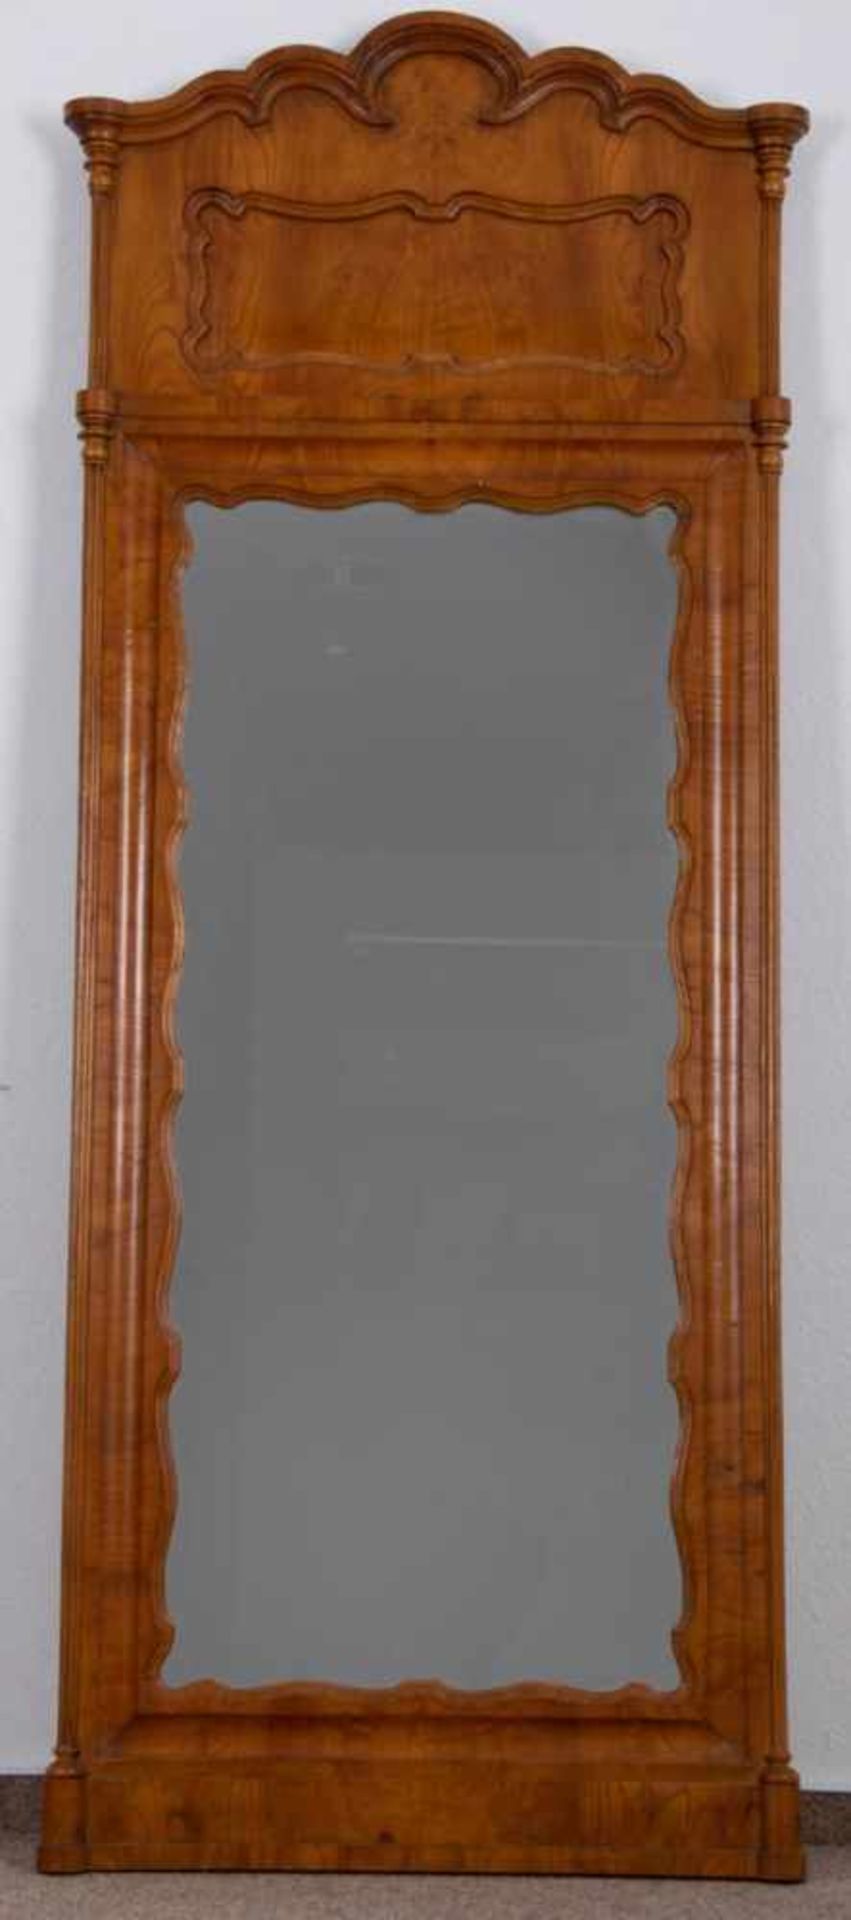 Großer Spiegel. Historismus/Louis Philippe, norddeutsch um 1860/80. Rahmung in Esche massiv & - Image 5 of 6